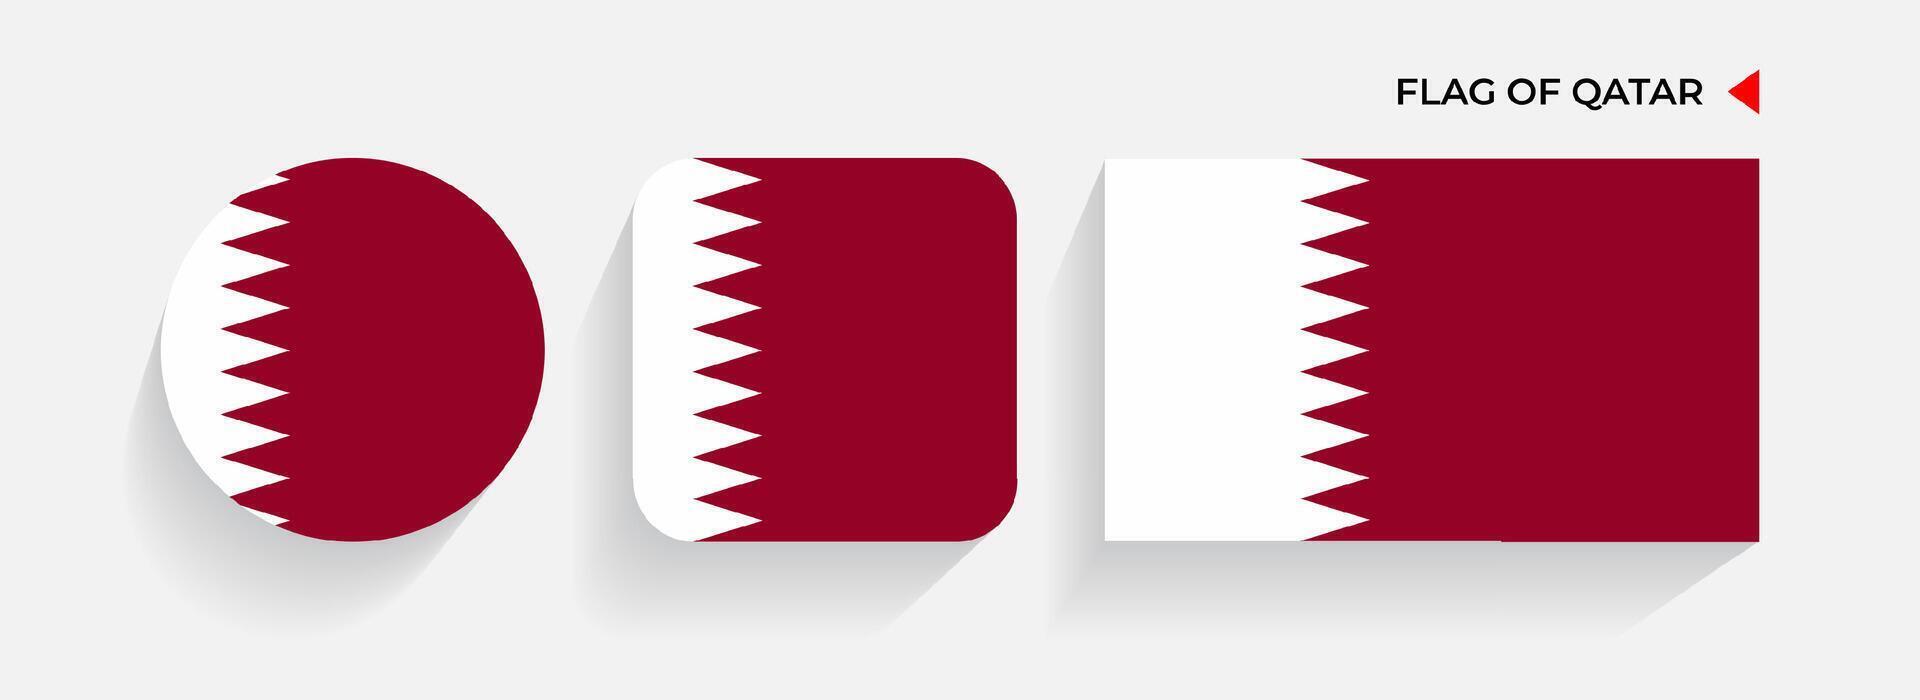 Katar banderas arreglado en redondo, cuadrado y rectangular formas vector